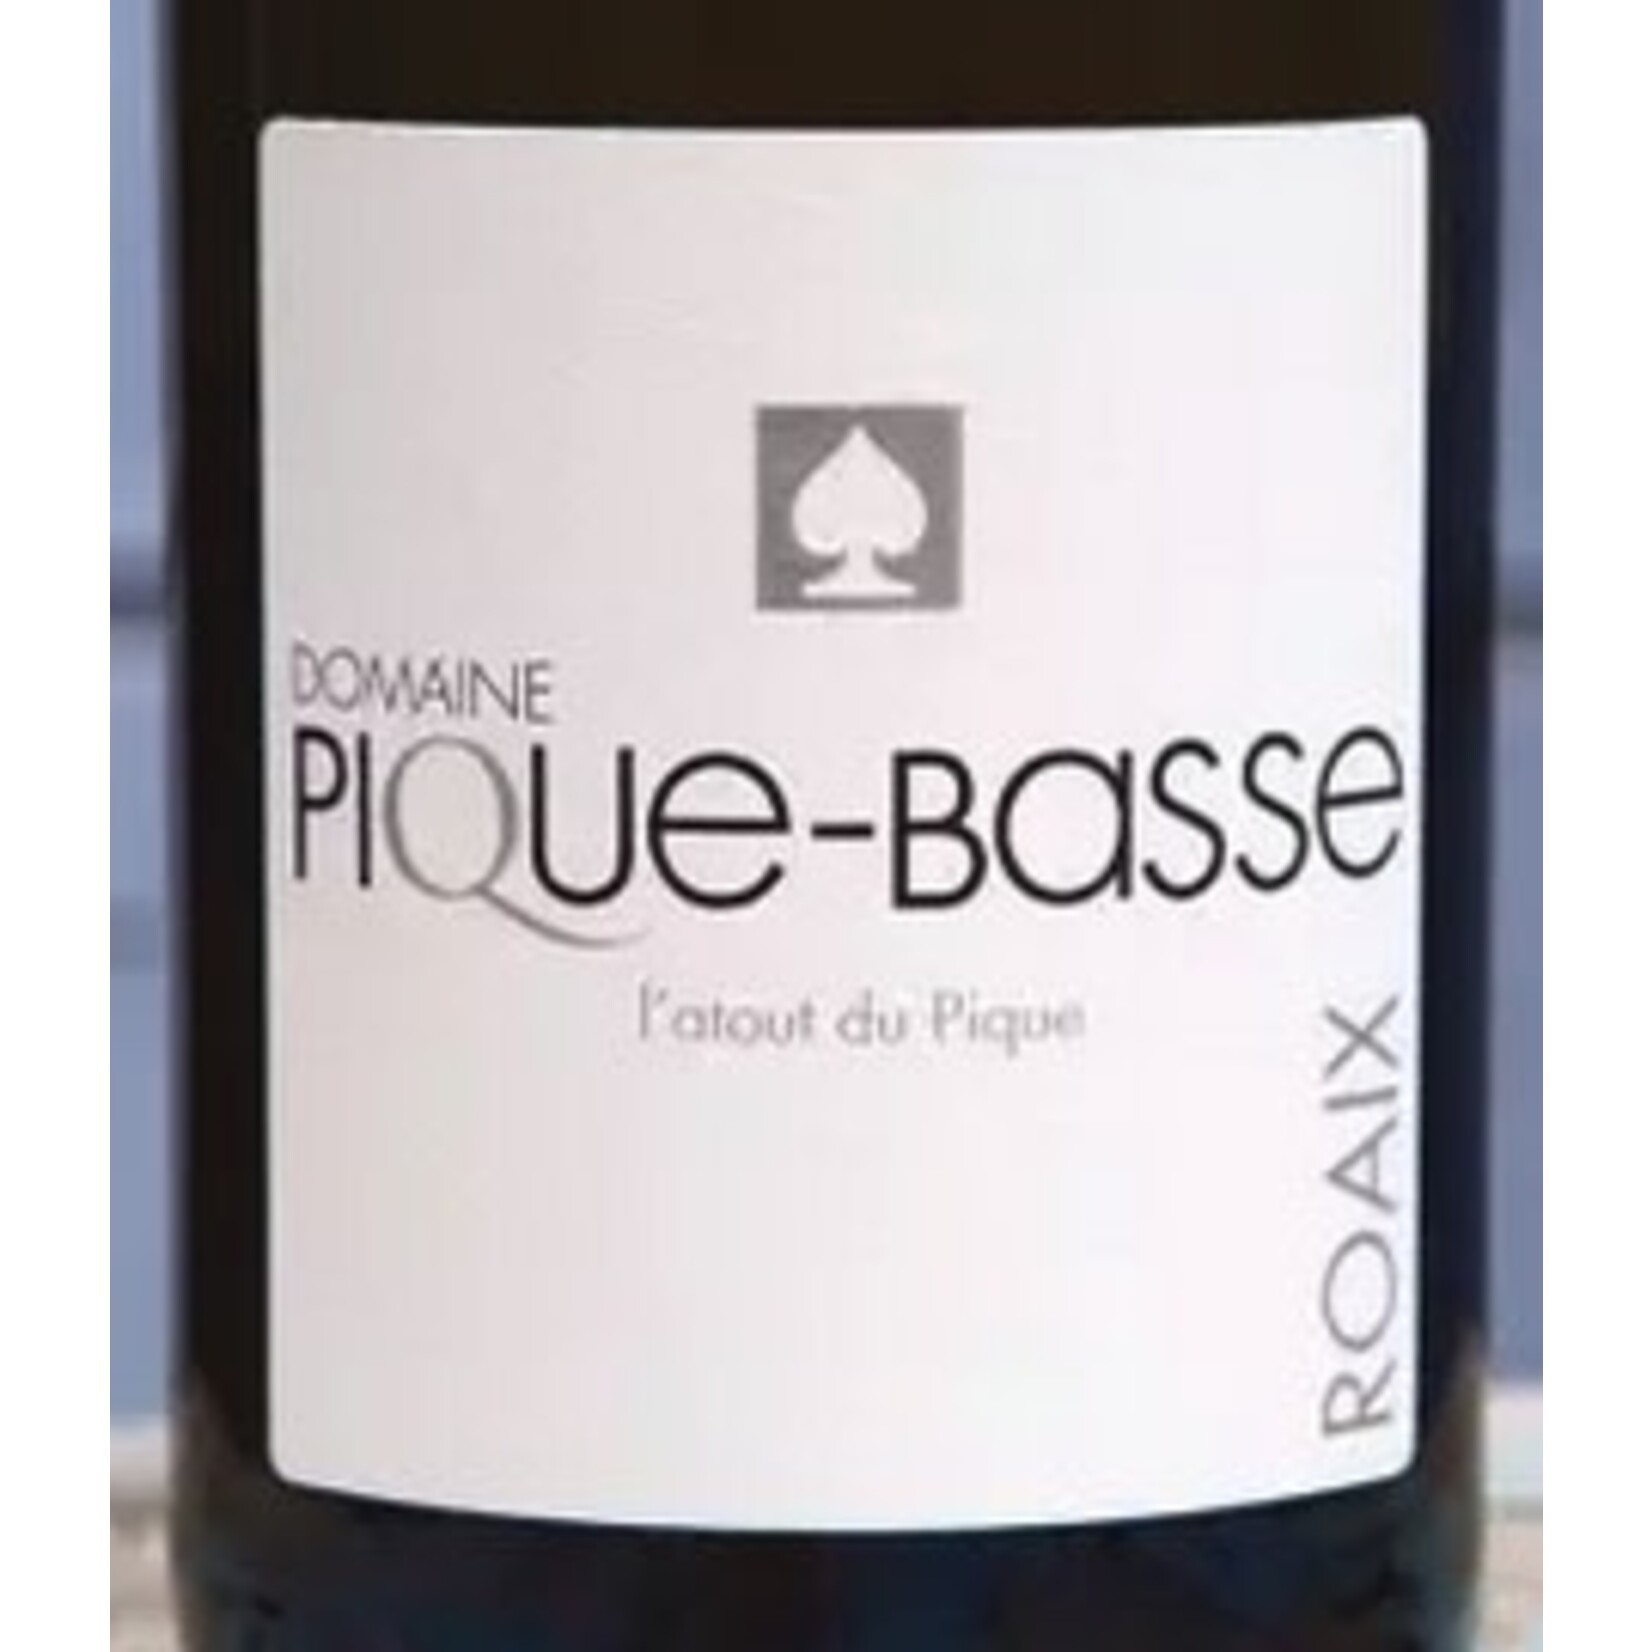 Wine Domaine Pique-Basse Cotes du Rhone Blanc Villages Roaix L'Atout du Pique 2021